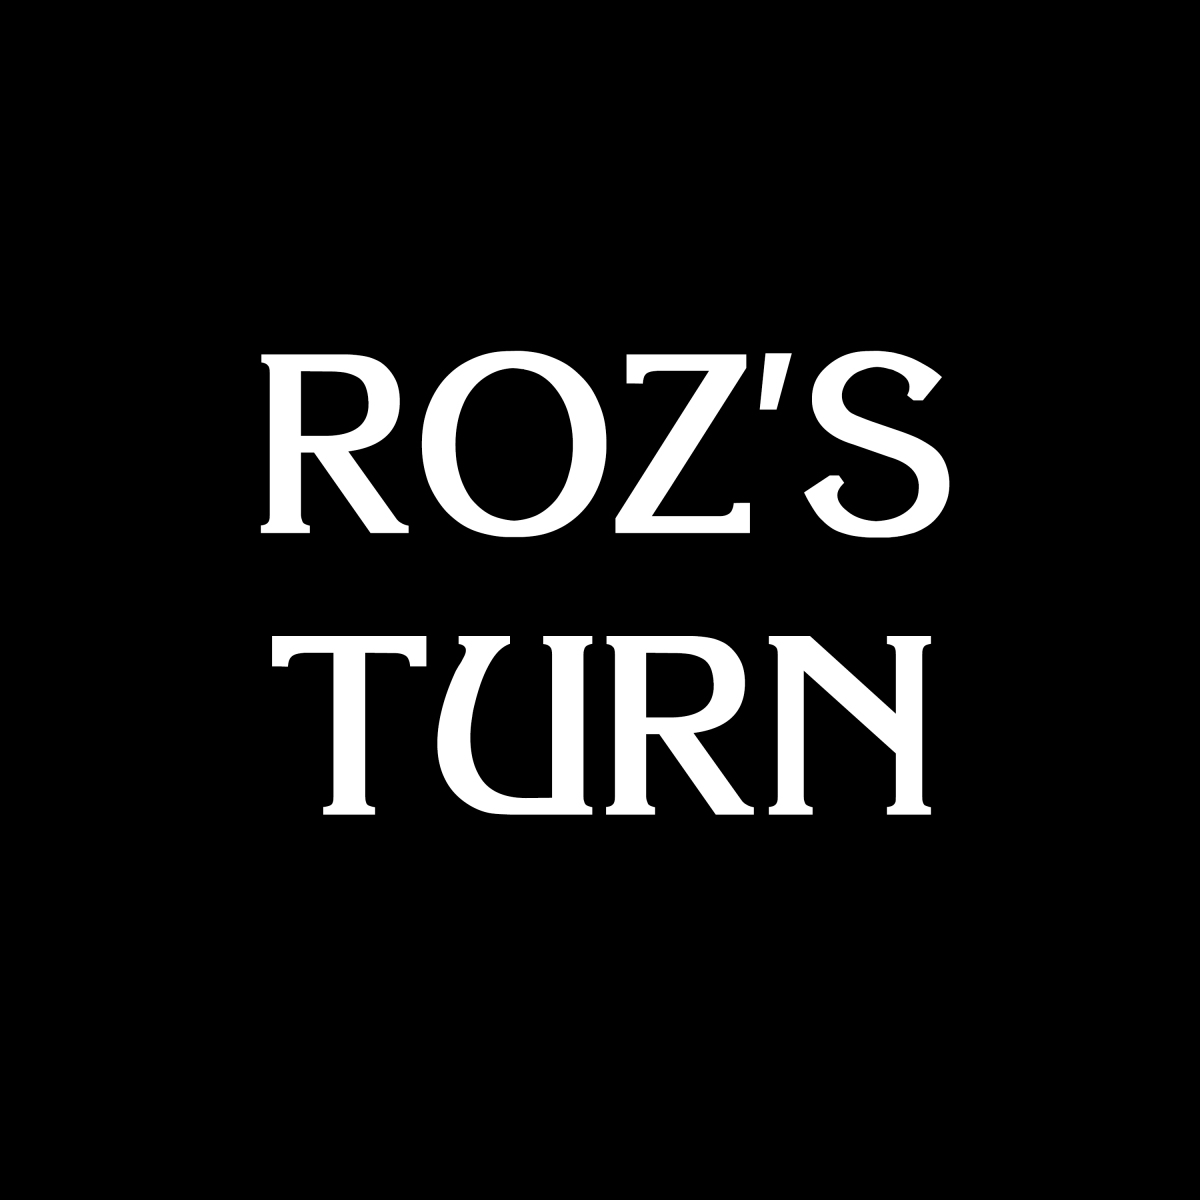 Roz's Turn